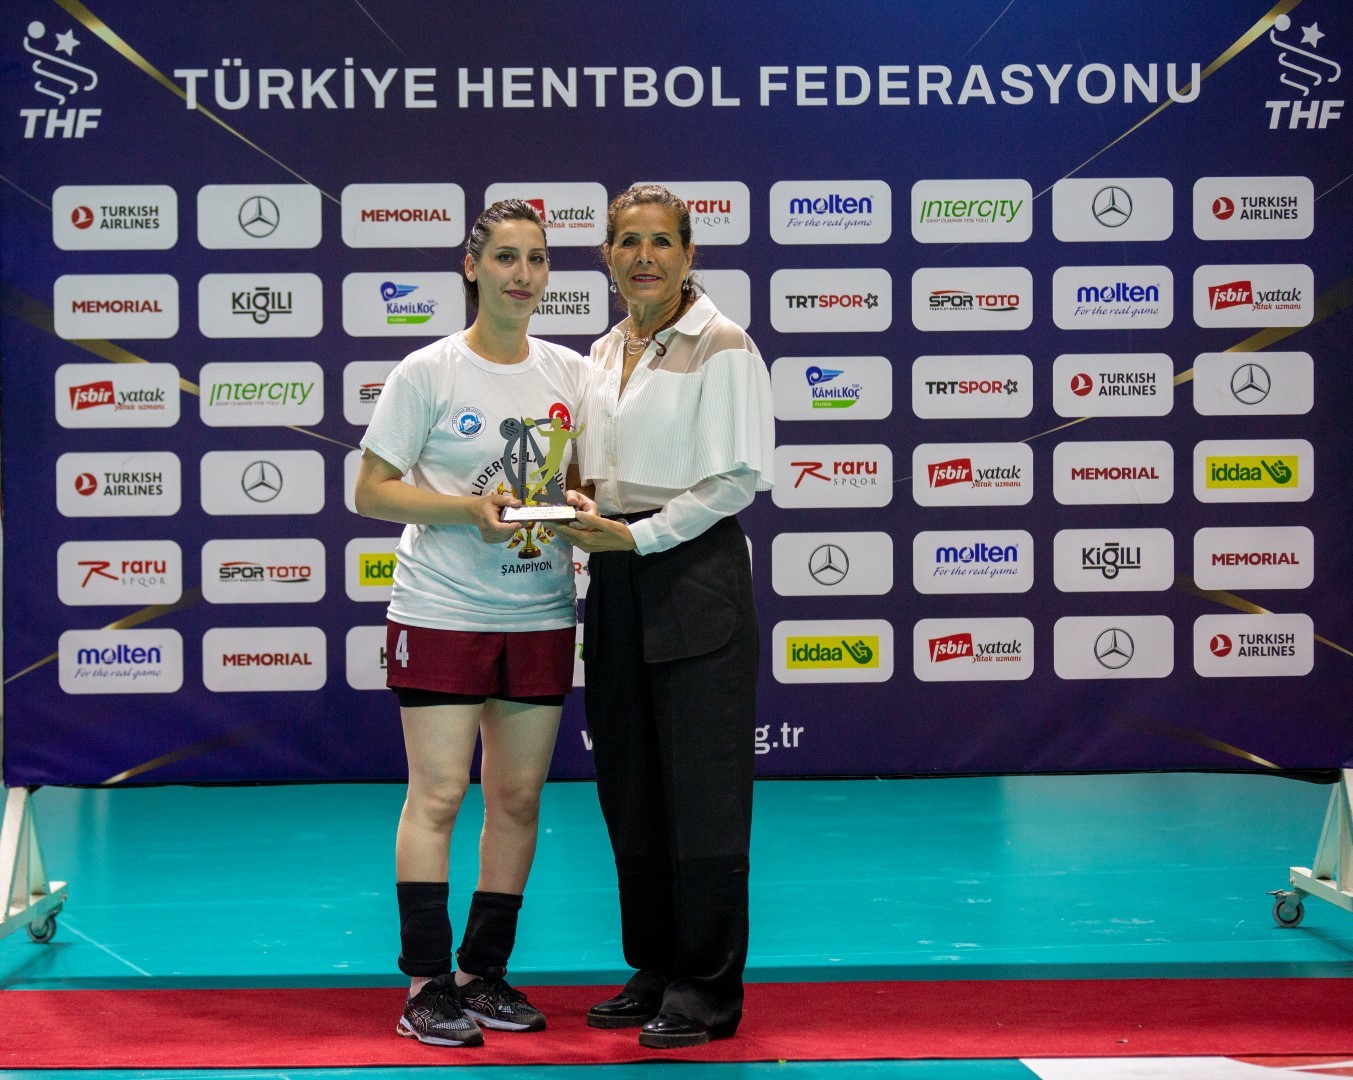 Hentbol Kadınlar 1. Ligi’nde Ortahisar Belediyesi şampiyon oldu
